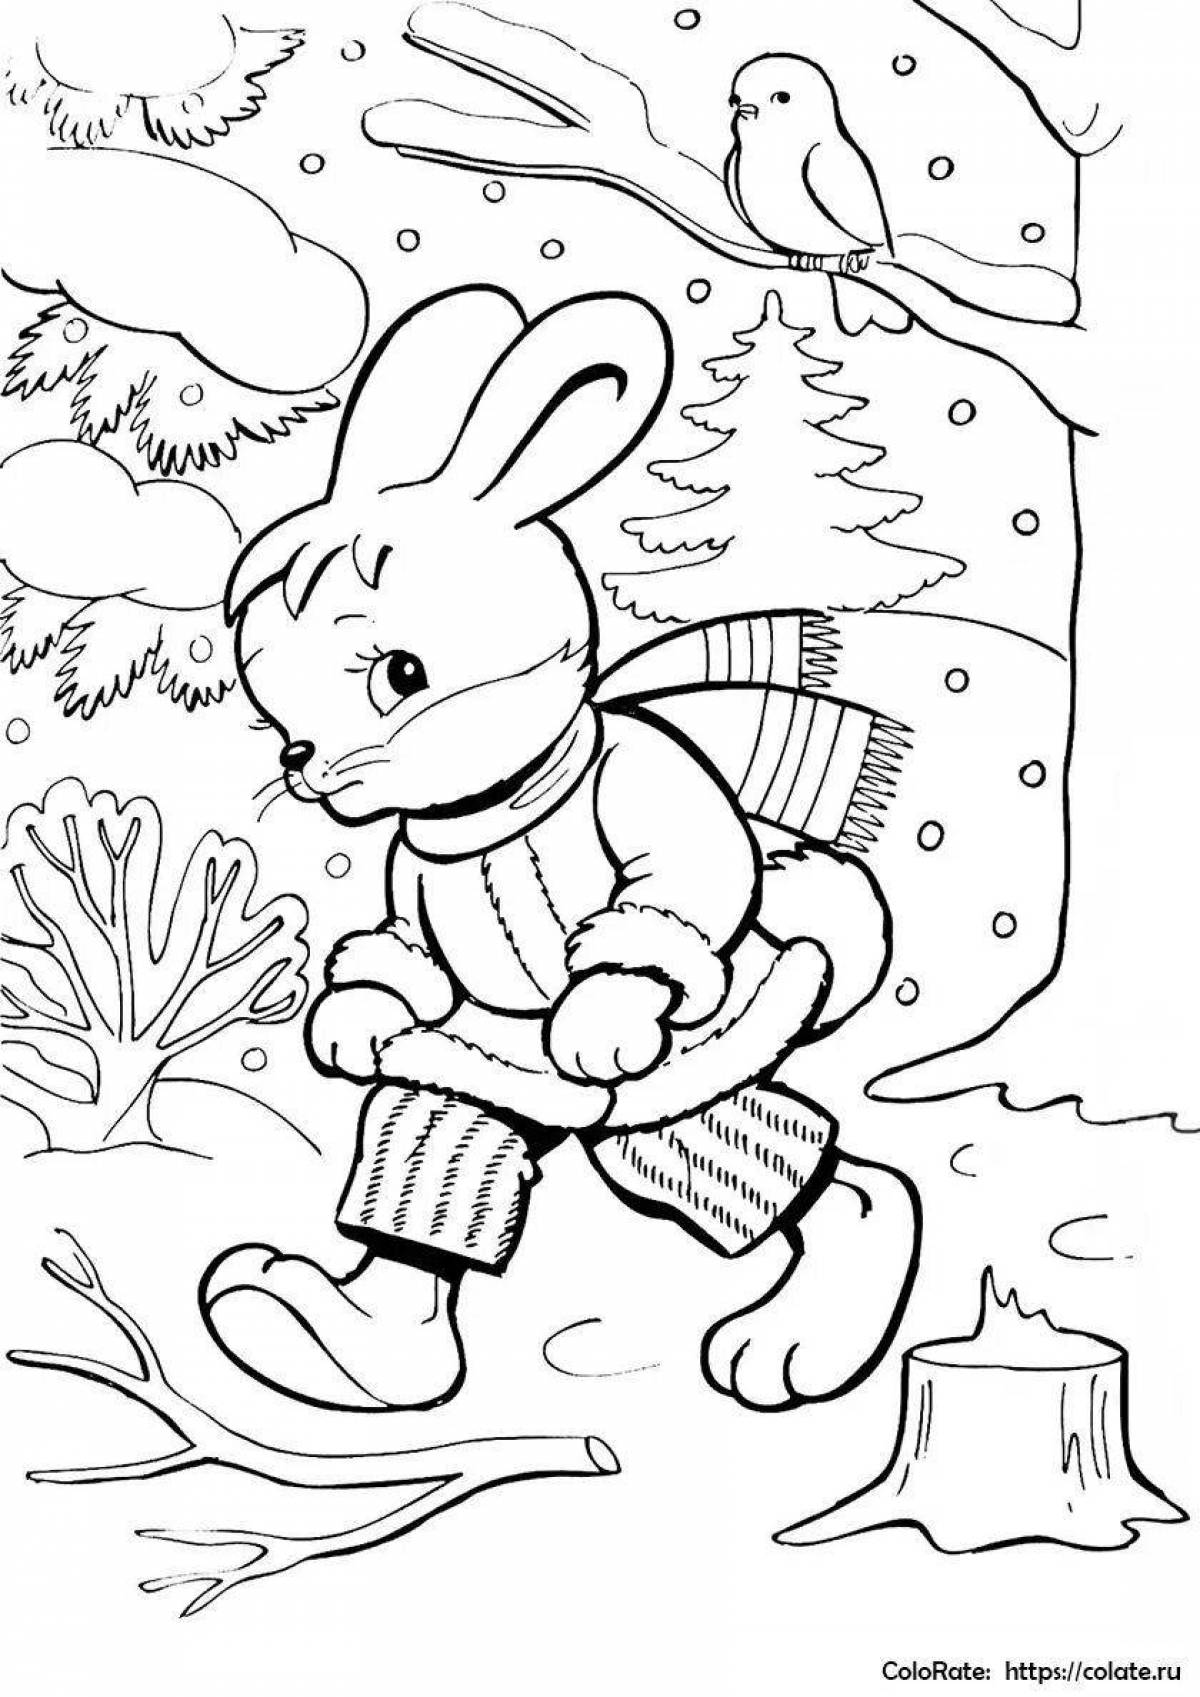 Плюшевая раскраска кролик зимой